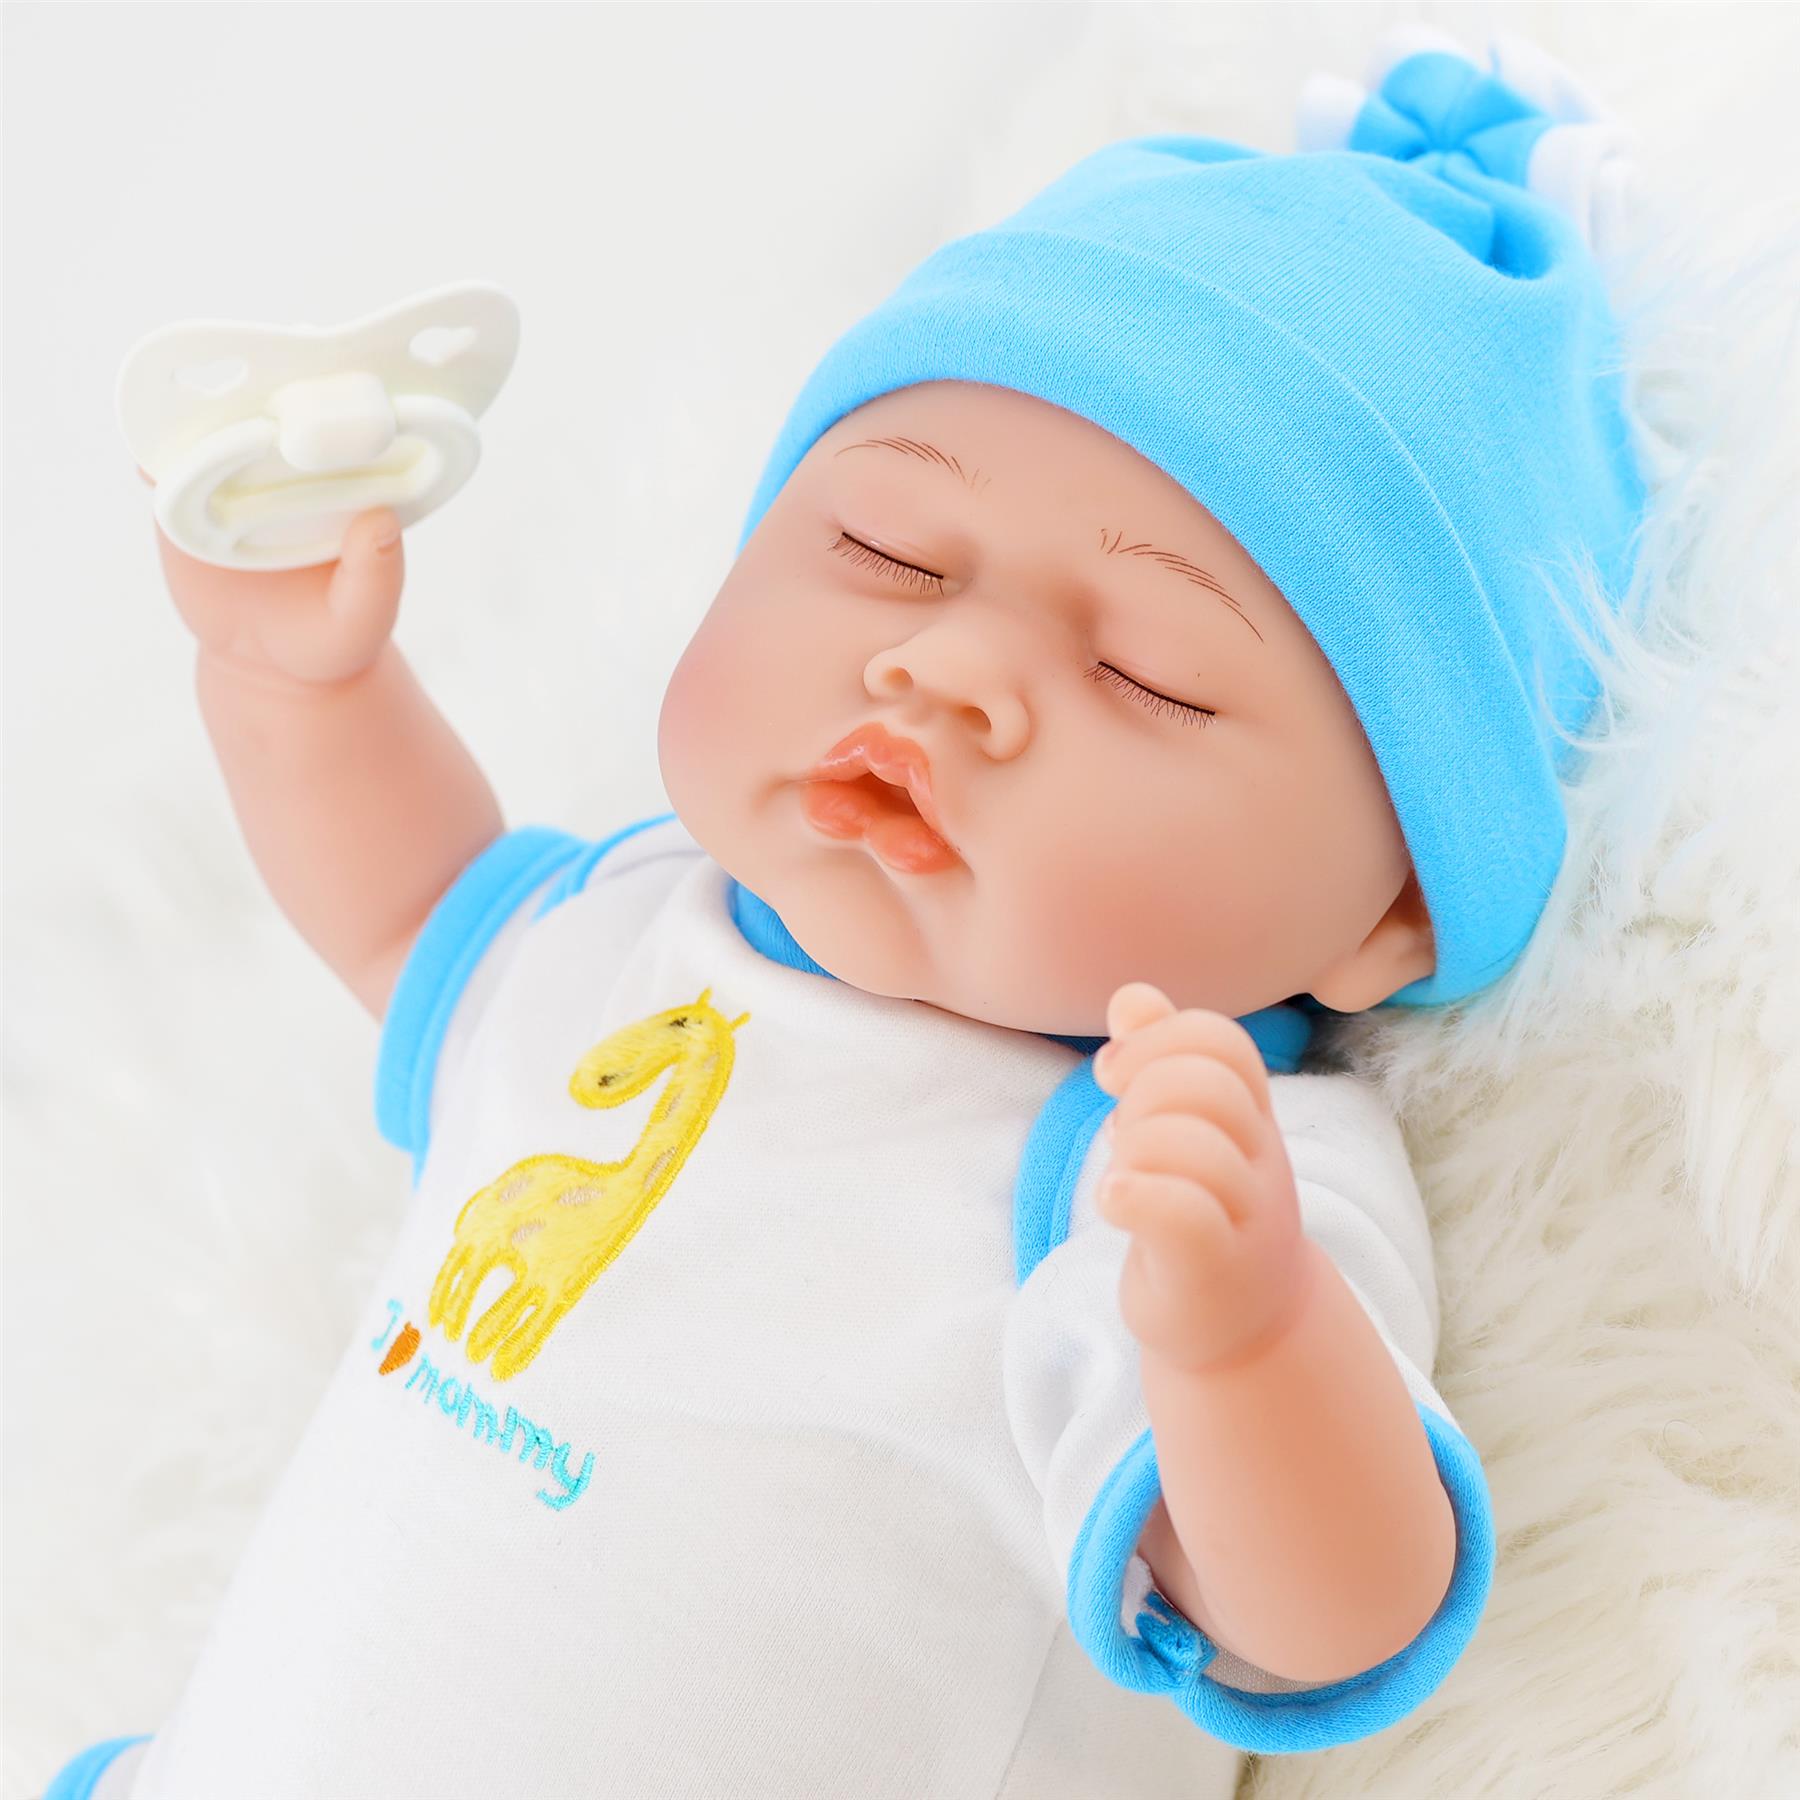 Lifelike Reborn Baby Sleeping Boy Doll 17" by BiBi Doll - The Magic Toy Shop